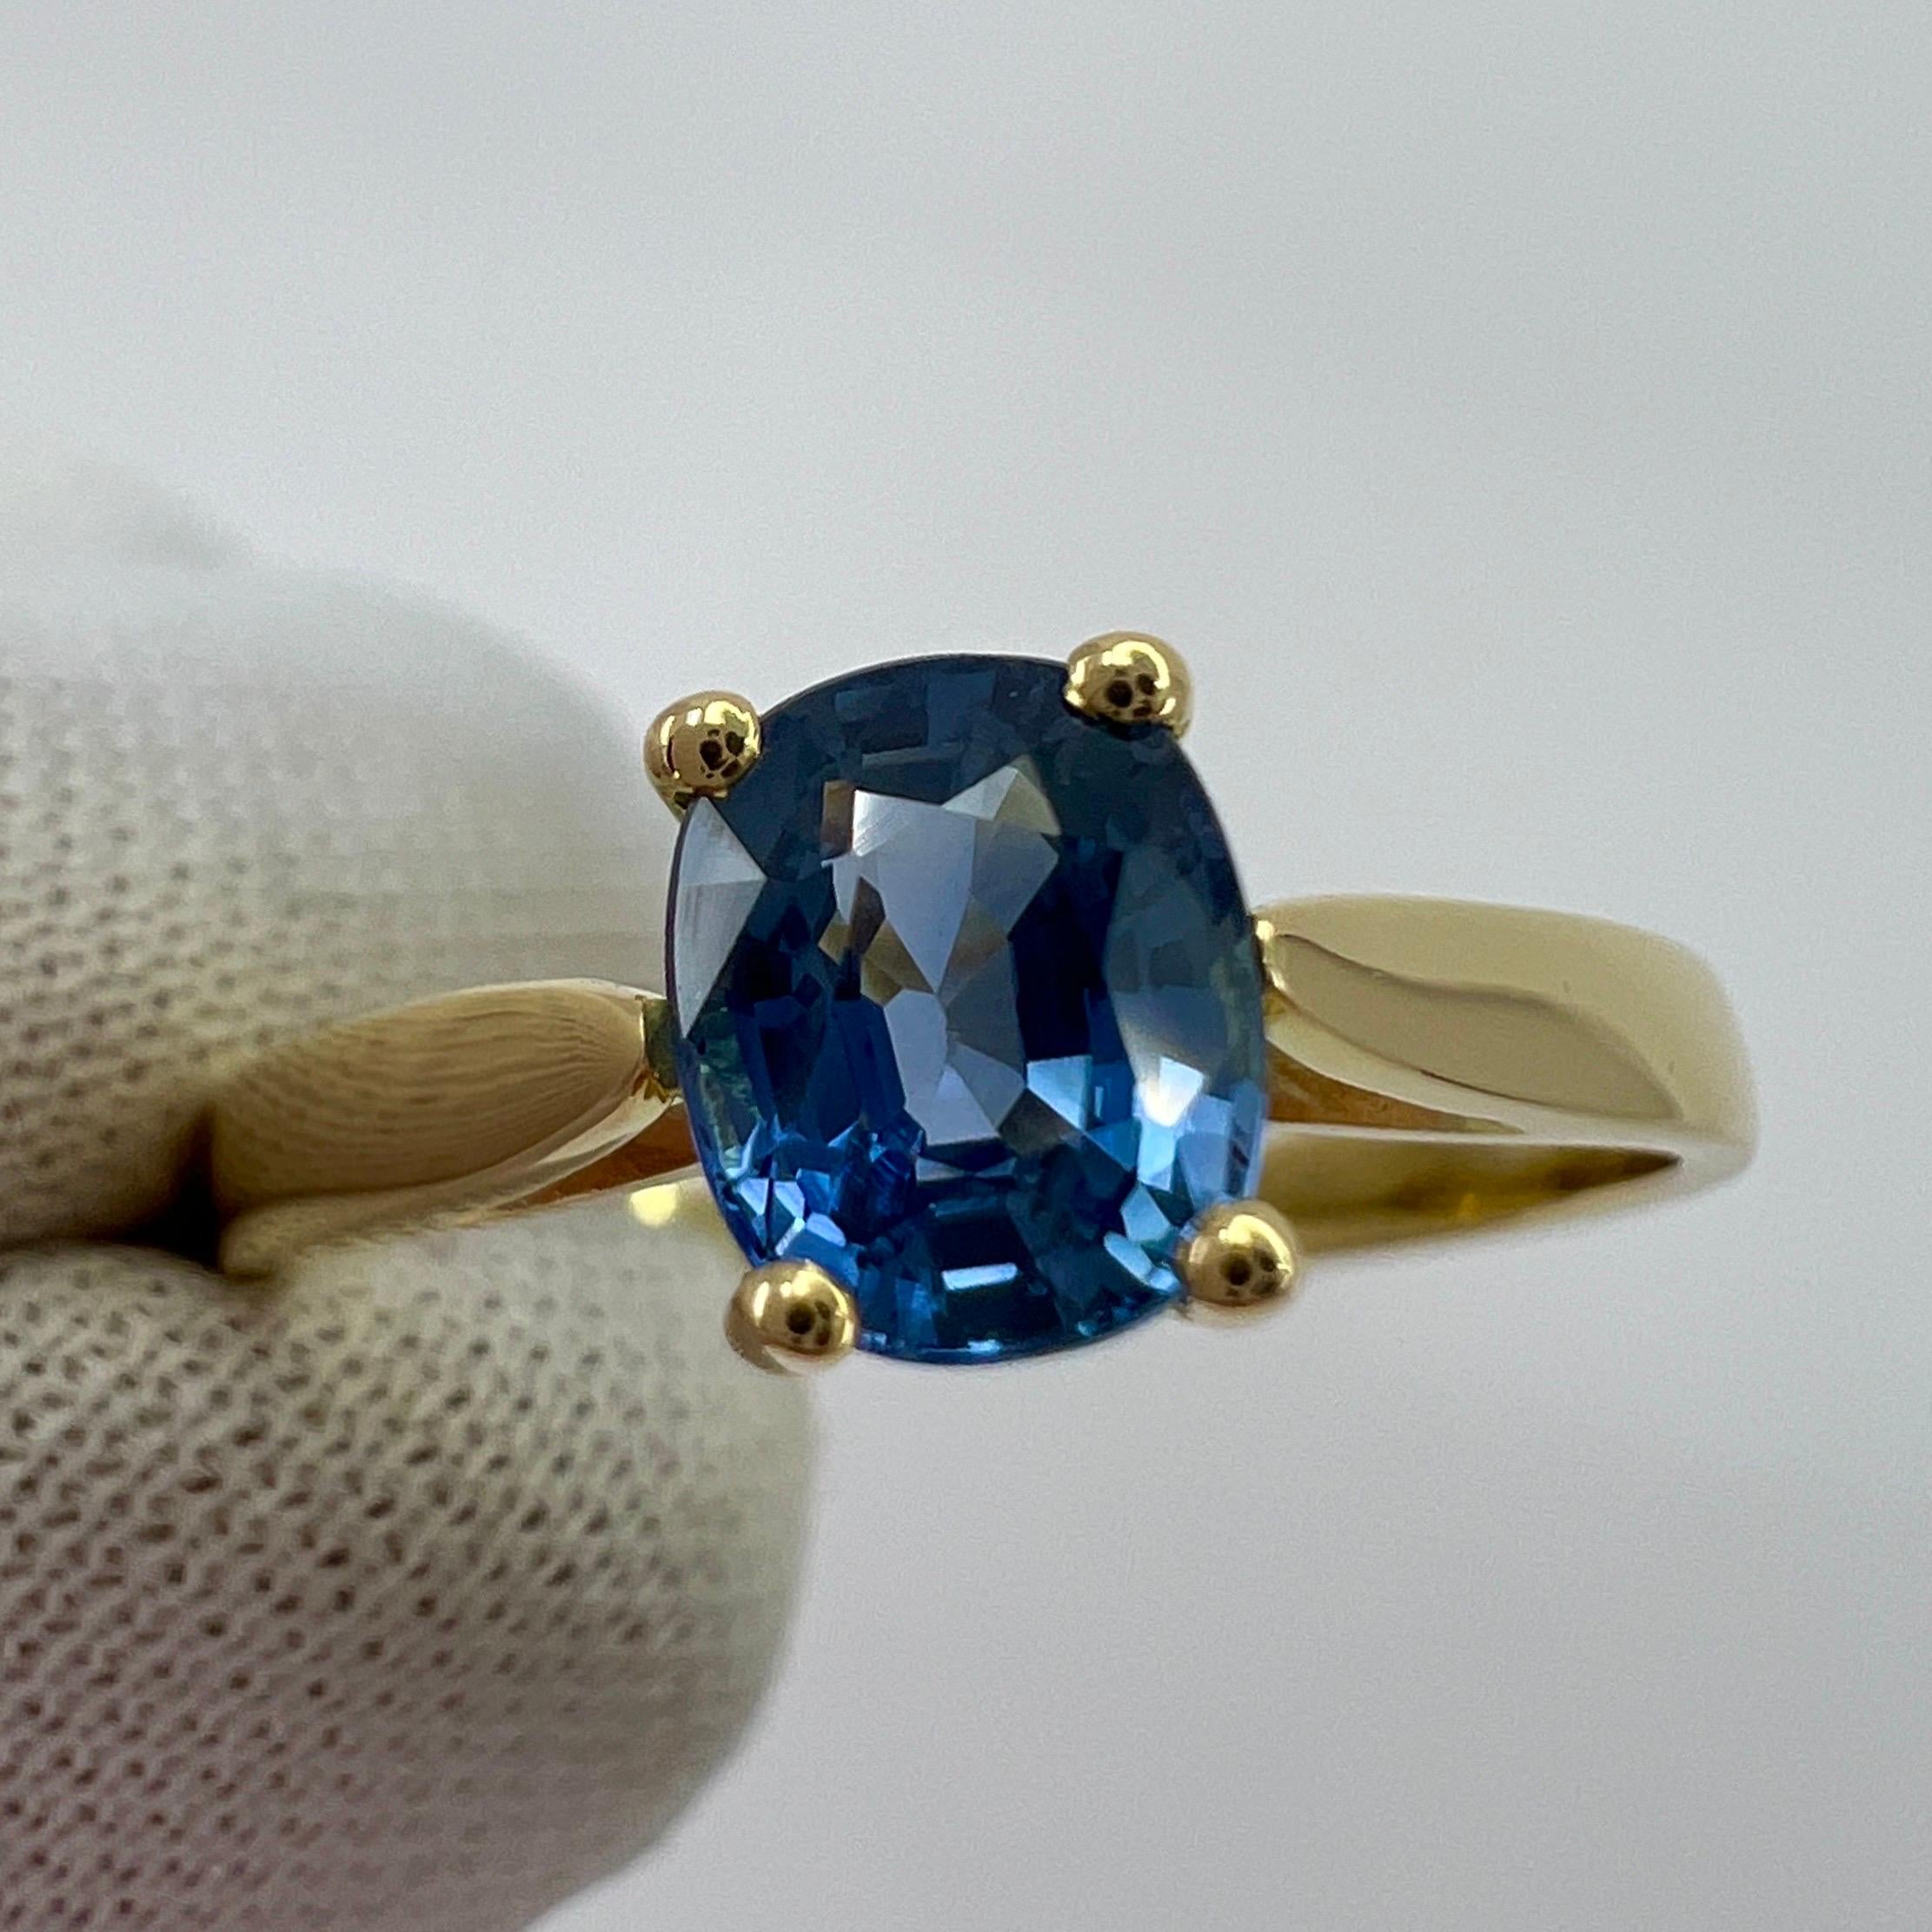 Vivid Cornflower Blue 1.03ct Ceylon Sapphire Cushion Cut 18k Gold Solitaire Ring 4